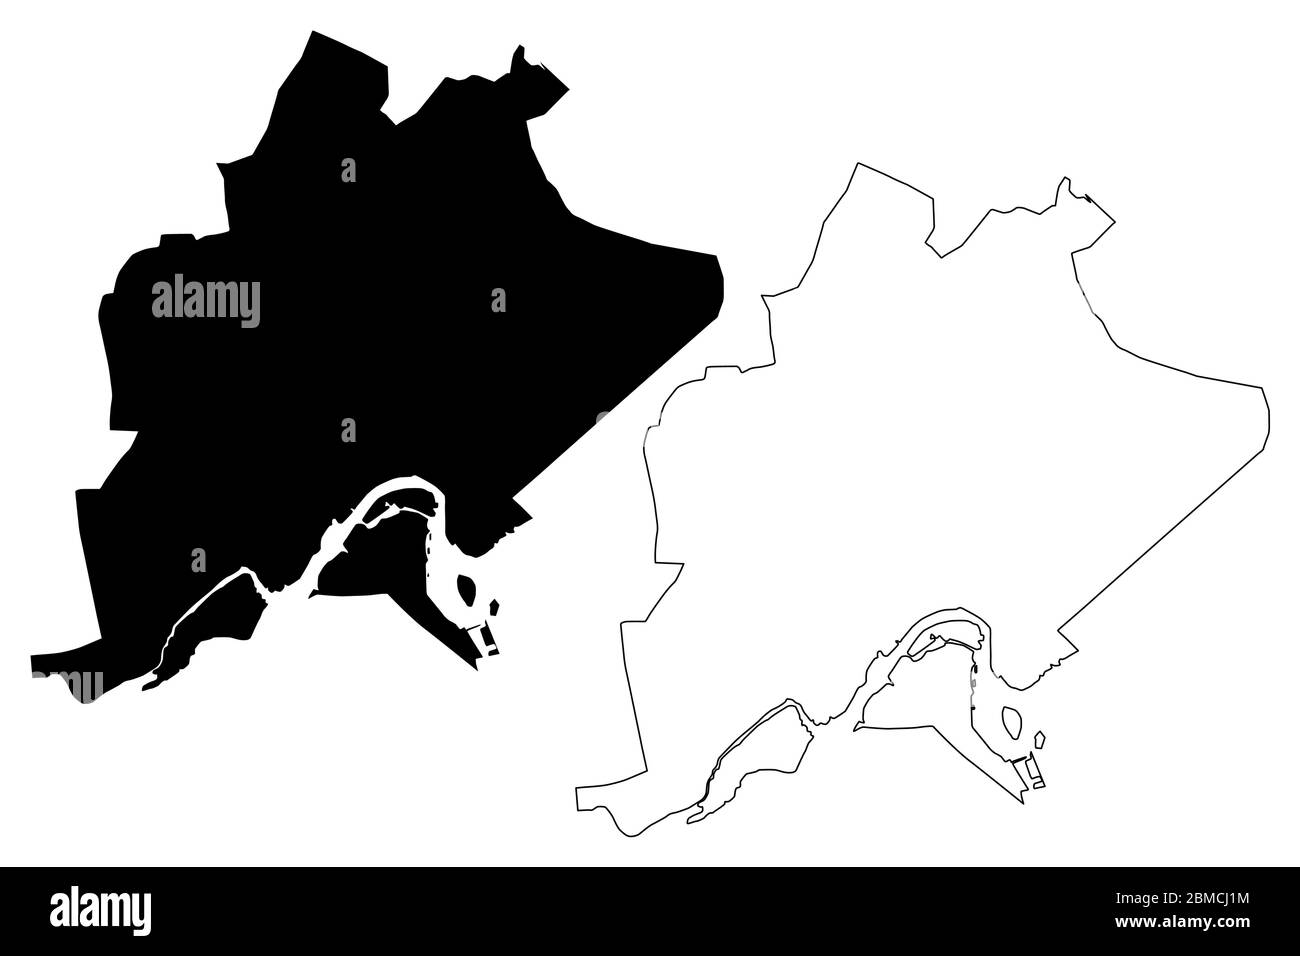 Bandar seri Begawan City (Nazione del Brunei, l'Abode della Pace, Borneo) mappa illustrazione vettoriale, schizzo di scriba Città del Brunei mappa della città Illustrazione Vettoriale